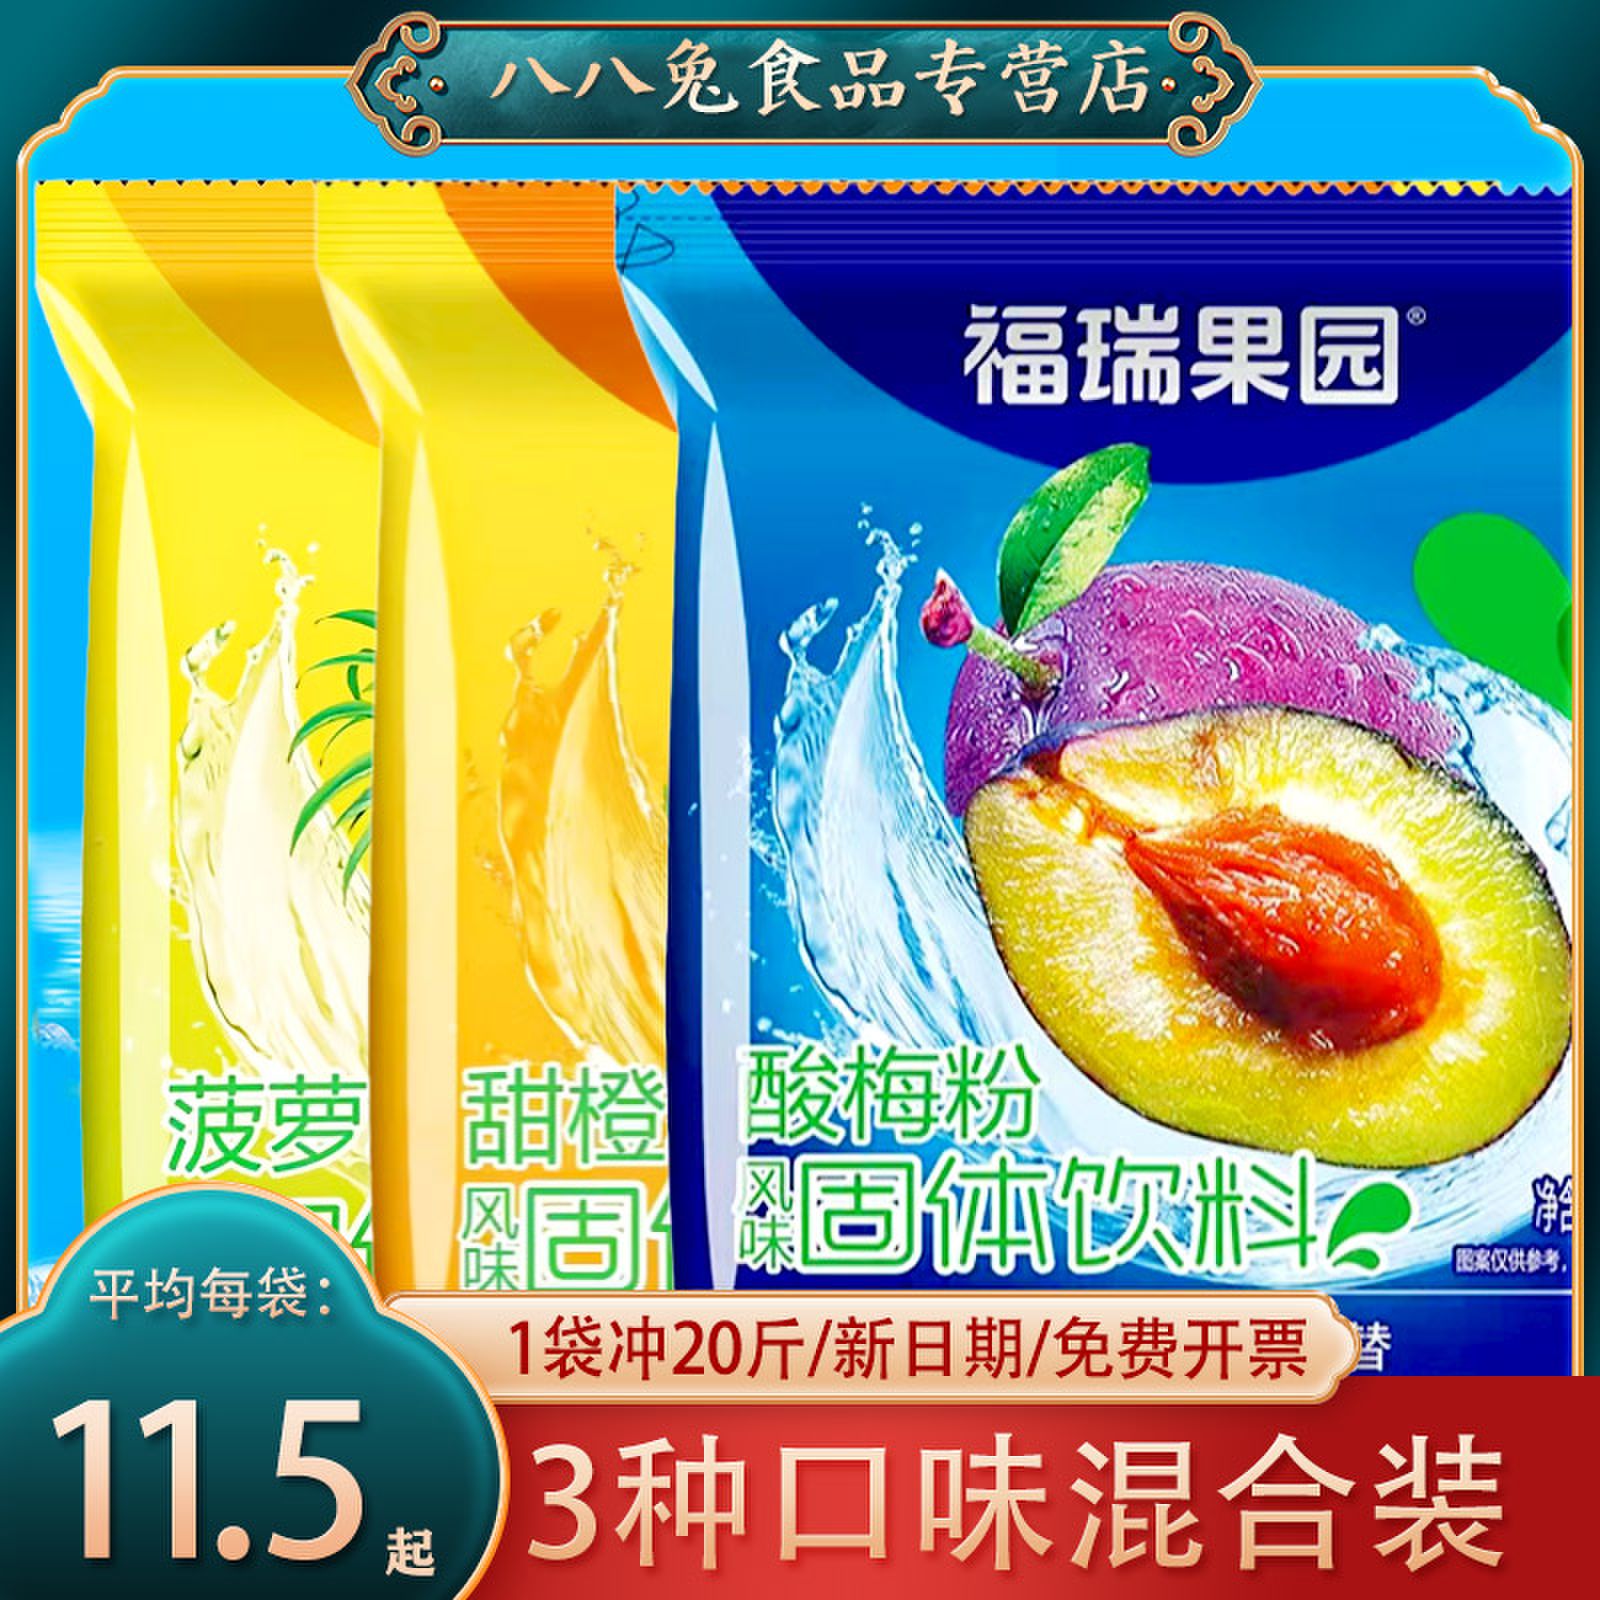 福瑞果园酸梅粉1000g*3袋商用速溶鲜橙粉雪梨柠檬粉酸梅汁果汁粉